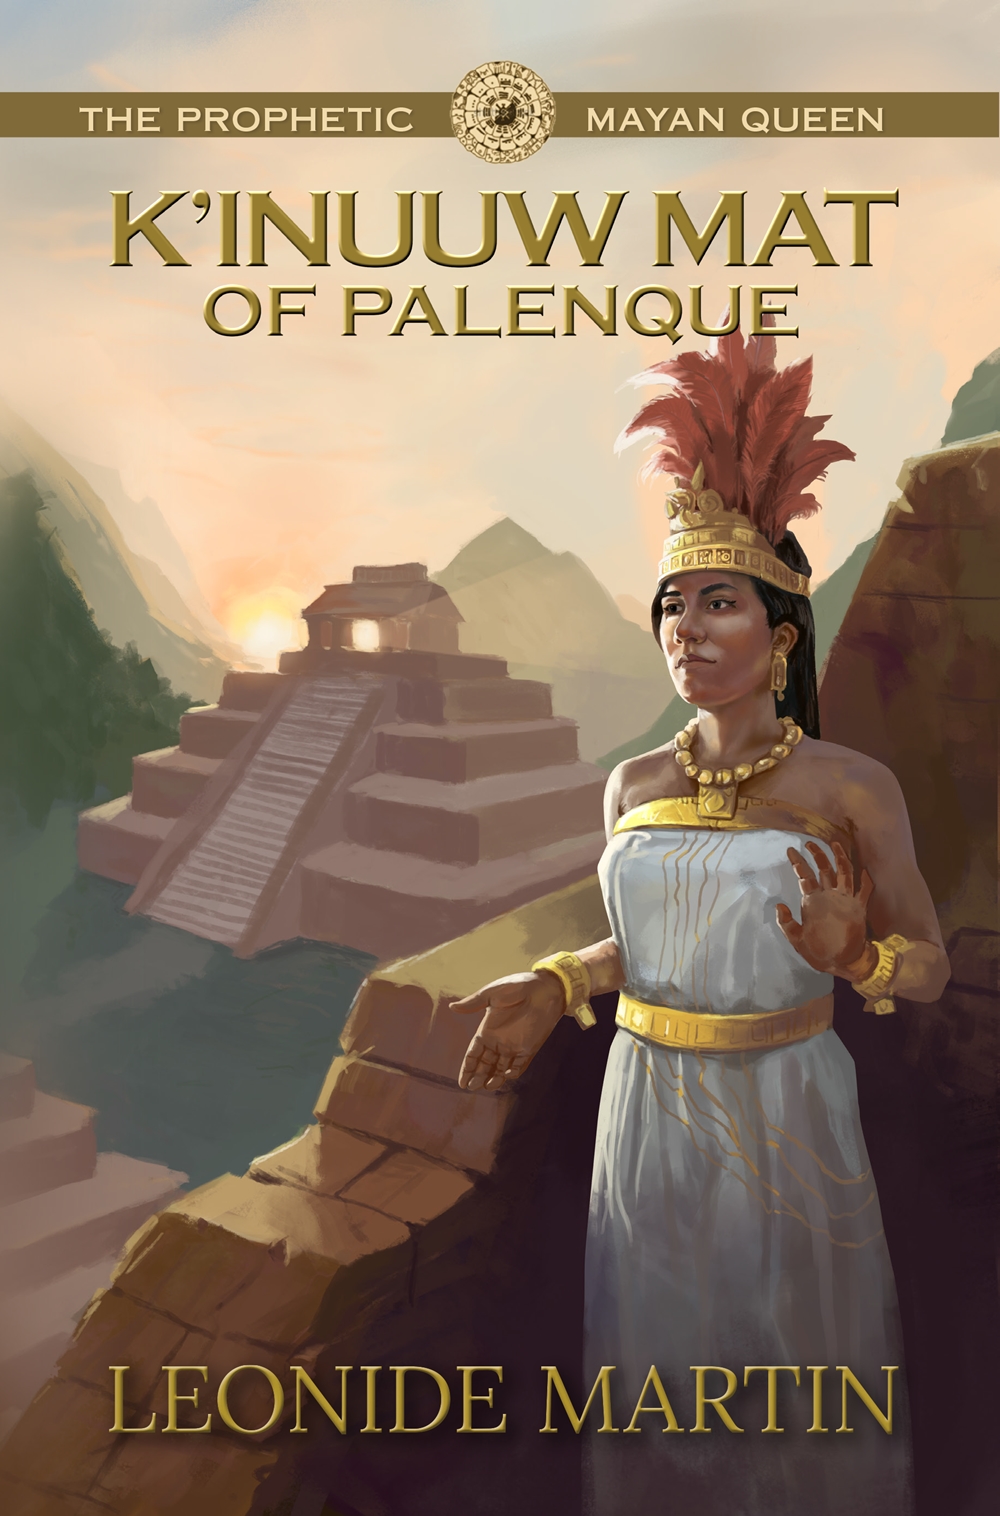 The Prophetic Mayan Queen: K'inuuw Mat of Palenque